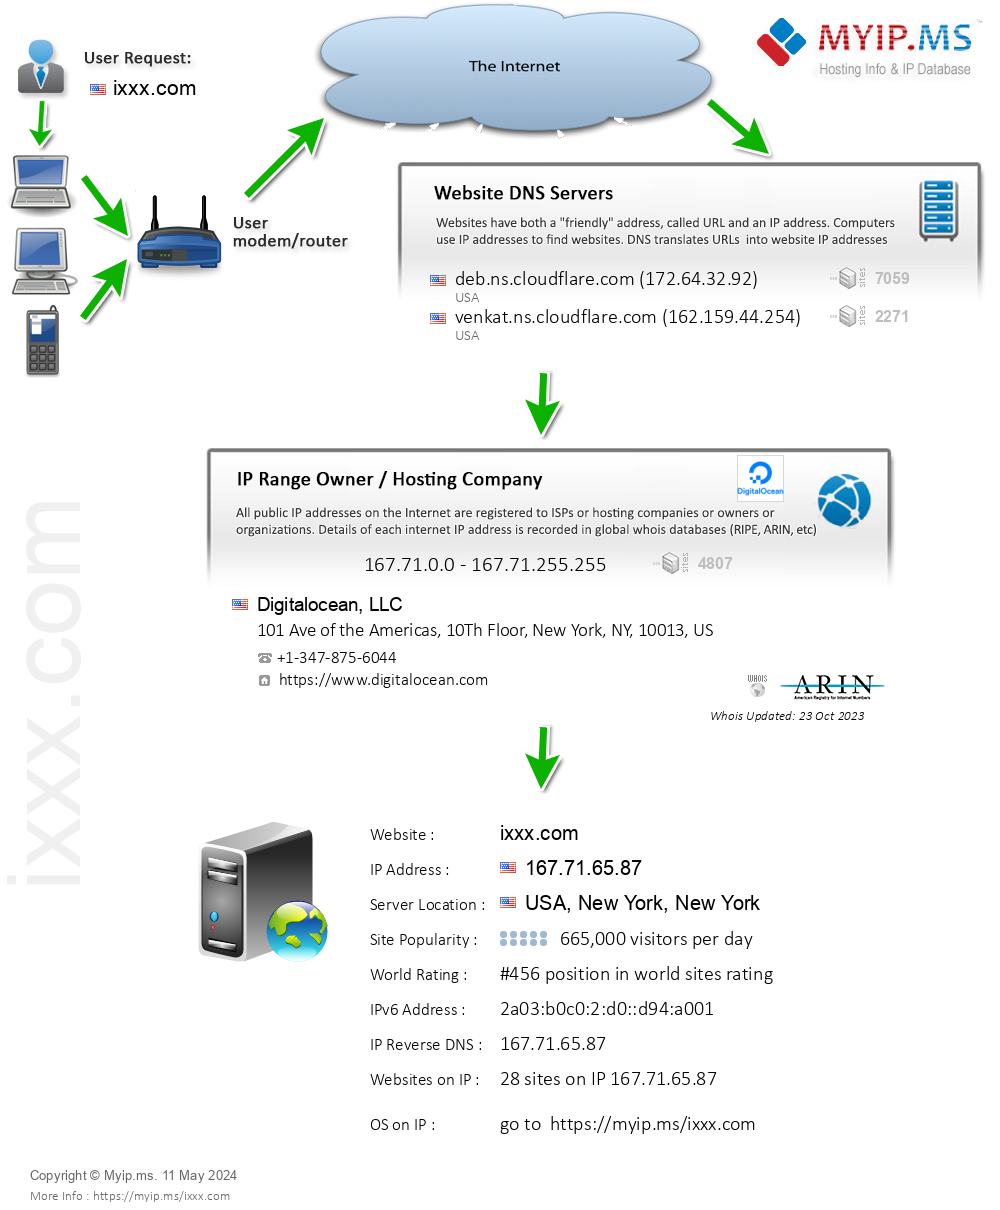 Ixxx.com - Website Hosting Visual IP Diagram